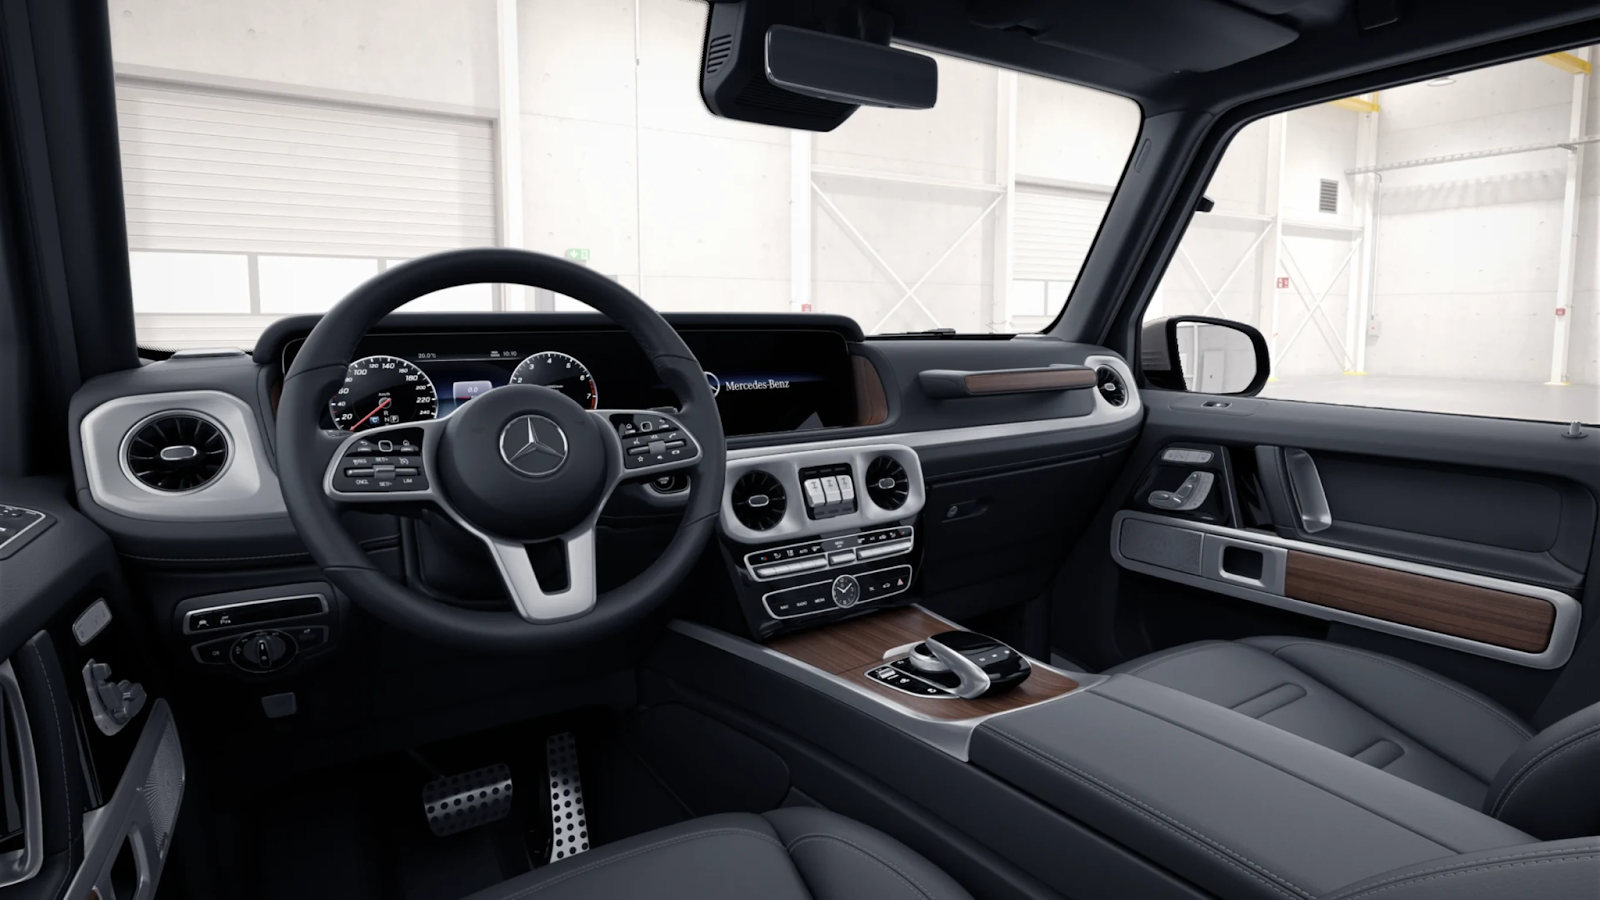 Mercedes Benz G-Class: ідеальний синтез стилю та функціональності